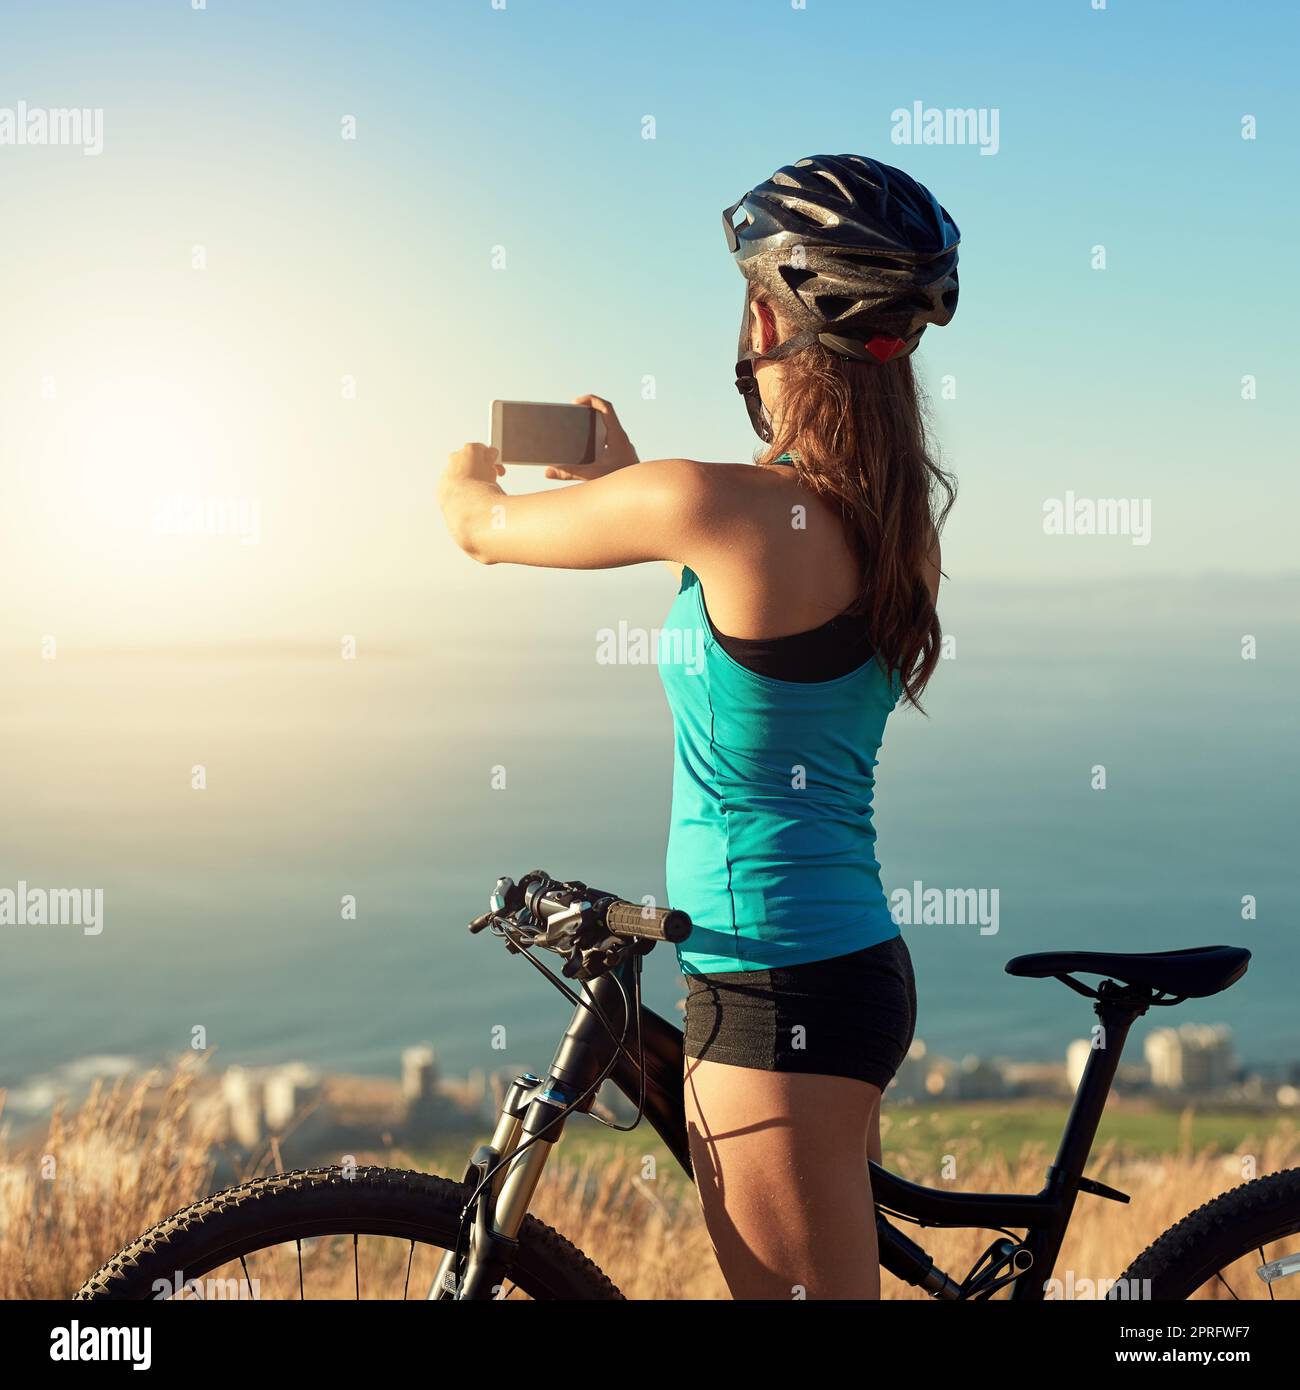 Mountainbiken ist eine Flucht. Eine junge Frau, die ein Bild von der schönen Landschaft beim Mountainbiken macht. Stockfoto